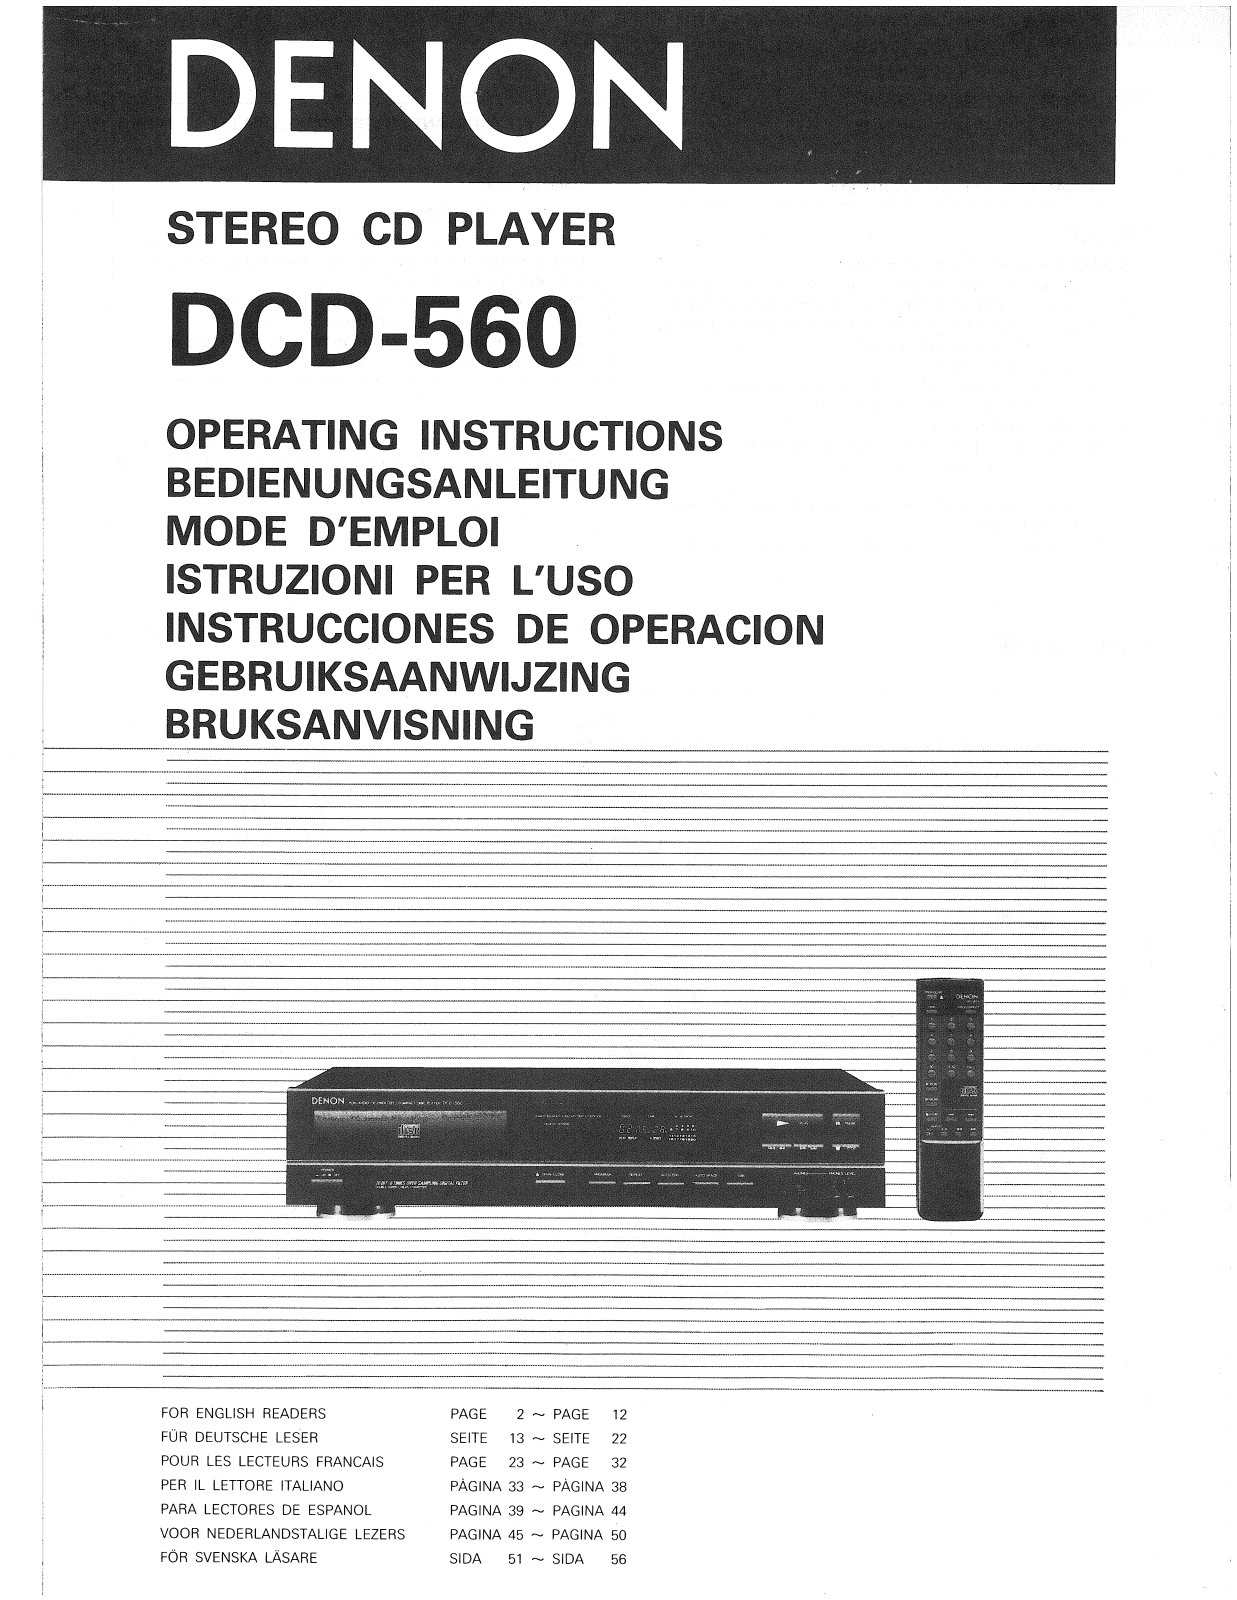 Denon DCD-560 Owner's Manual